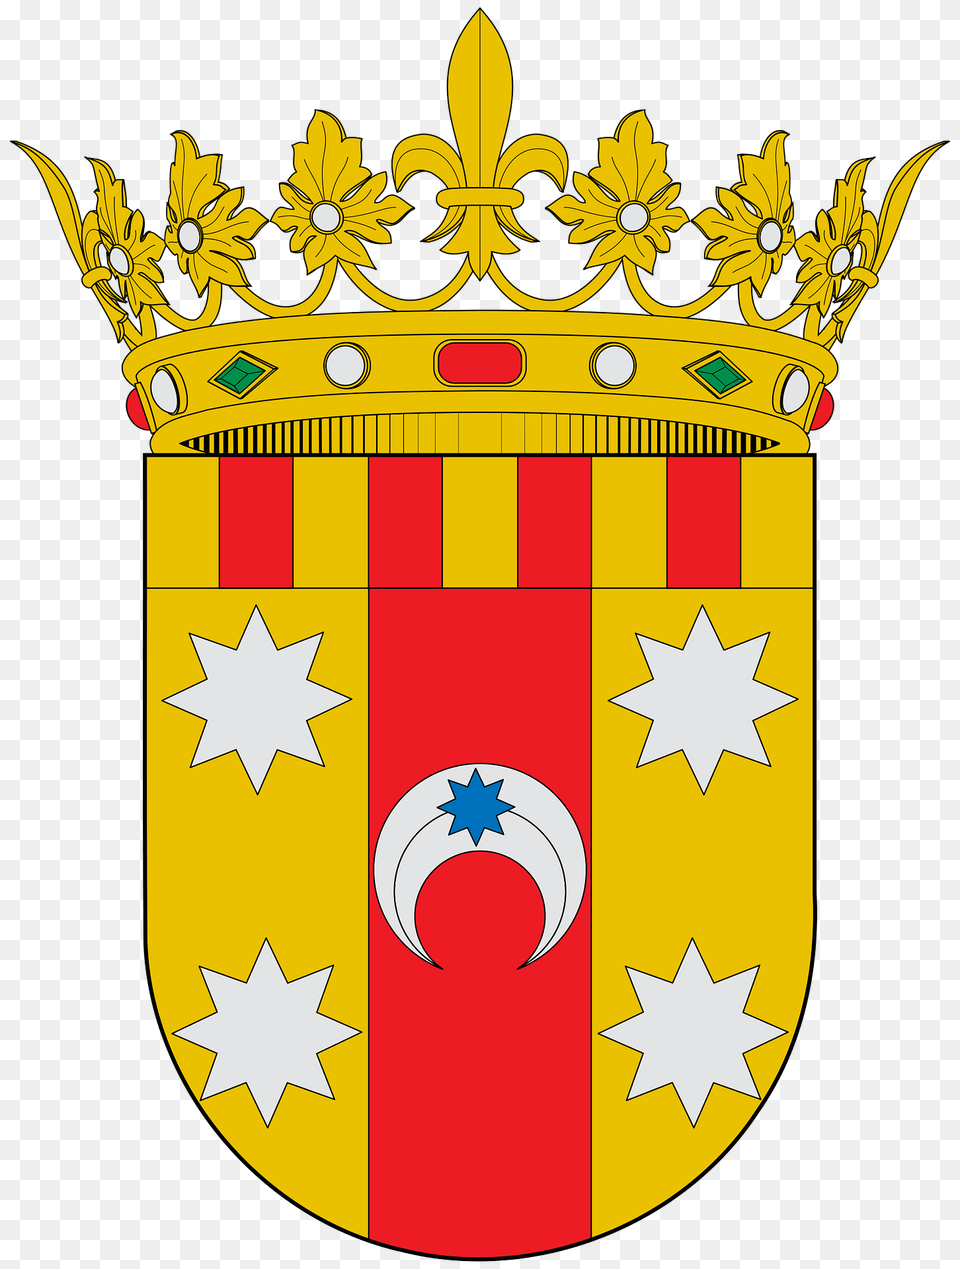 Escudo De La Comarca De Aranda Clipart, Armor, Emblem, Symbol, Dynamite Free Transparent Png